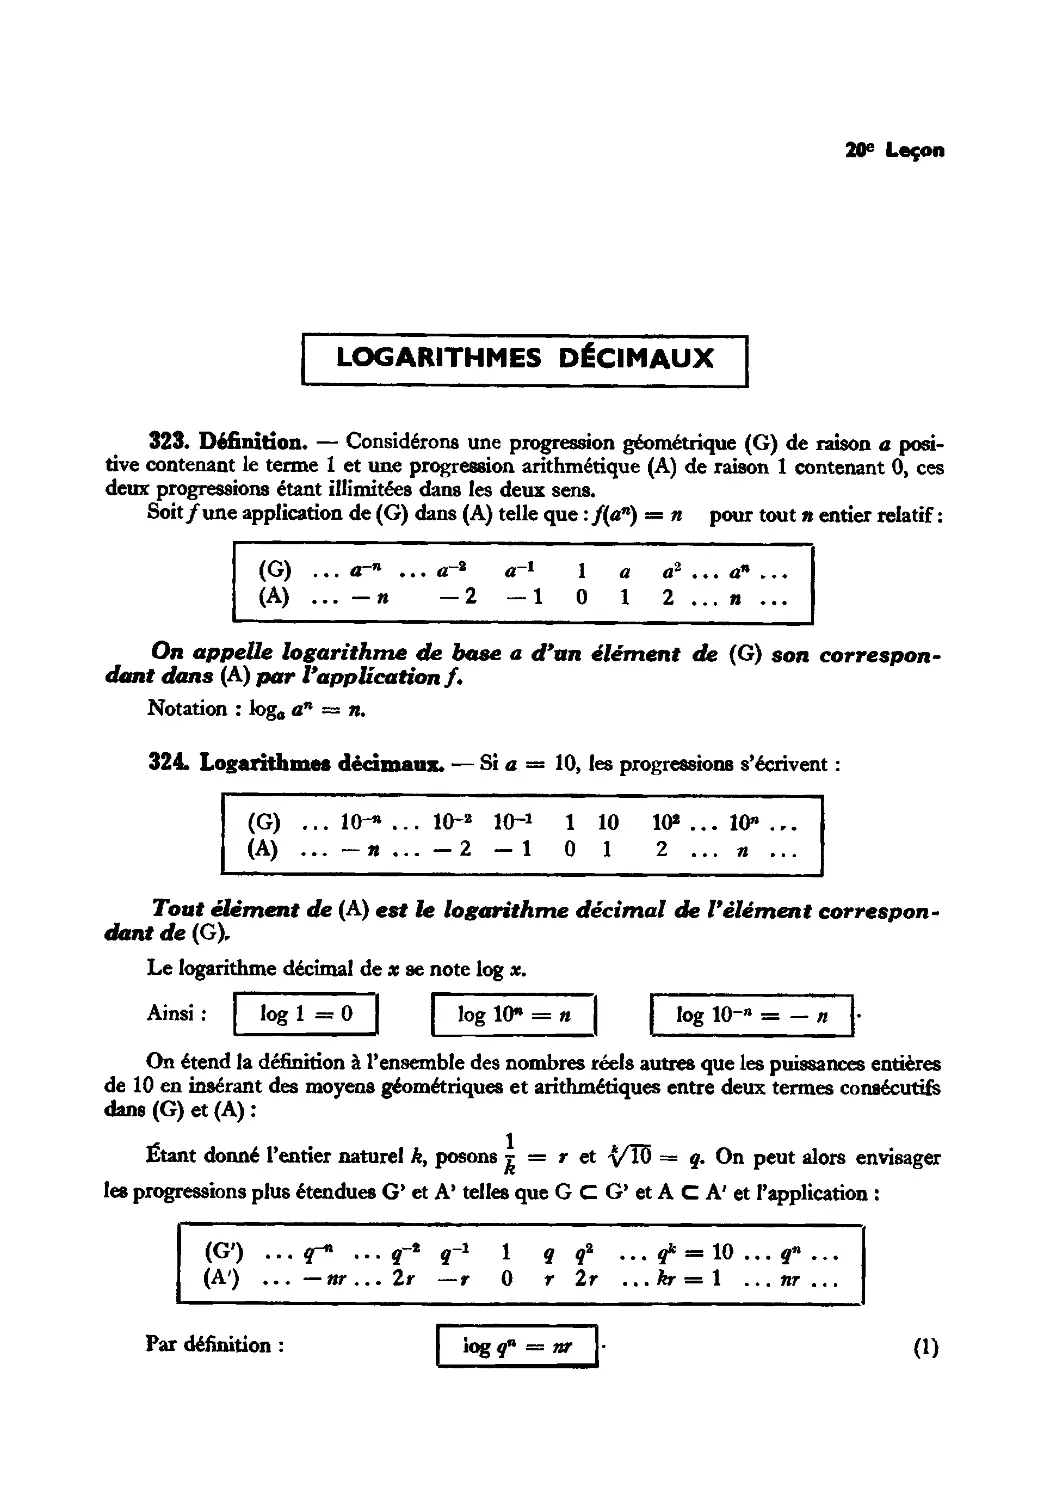 Leçon 20 — Logarithmes décimaux — Usage des tables — Calculs logarithmiques
324. Logarithmes décimaux